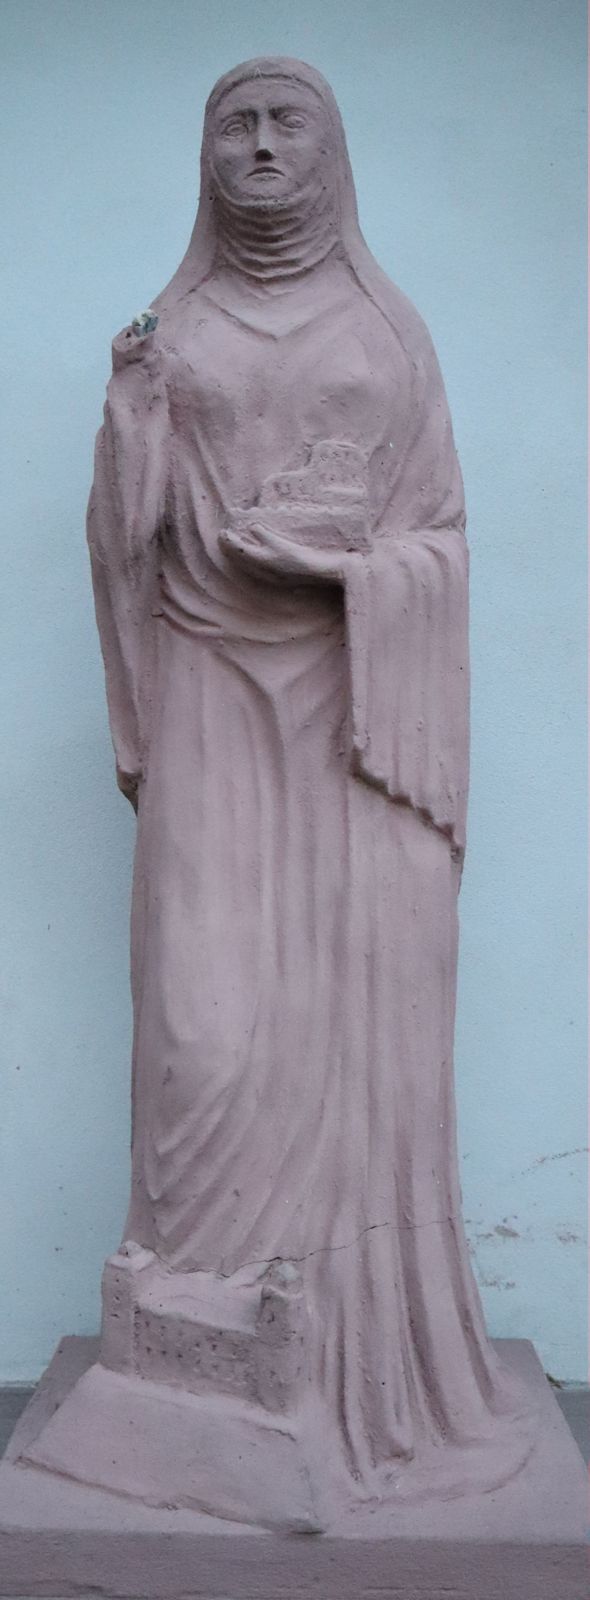 Statue in der Pfarrkirche in Karlburg